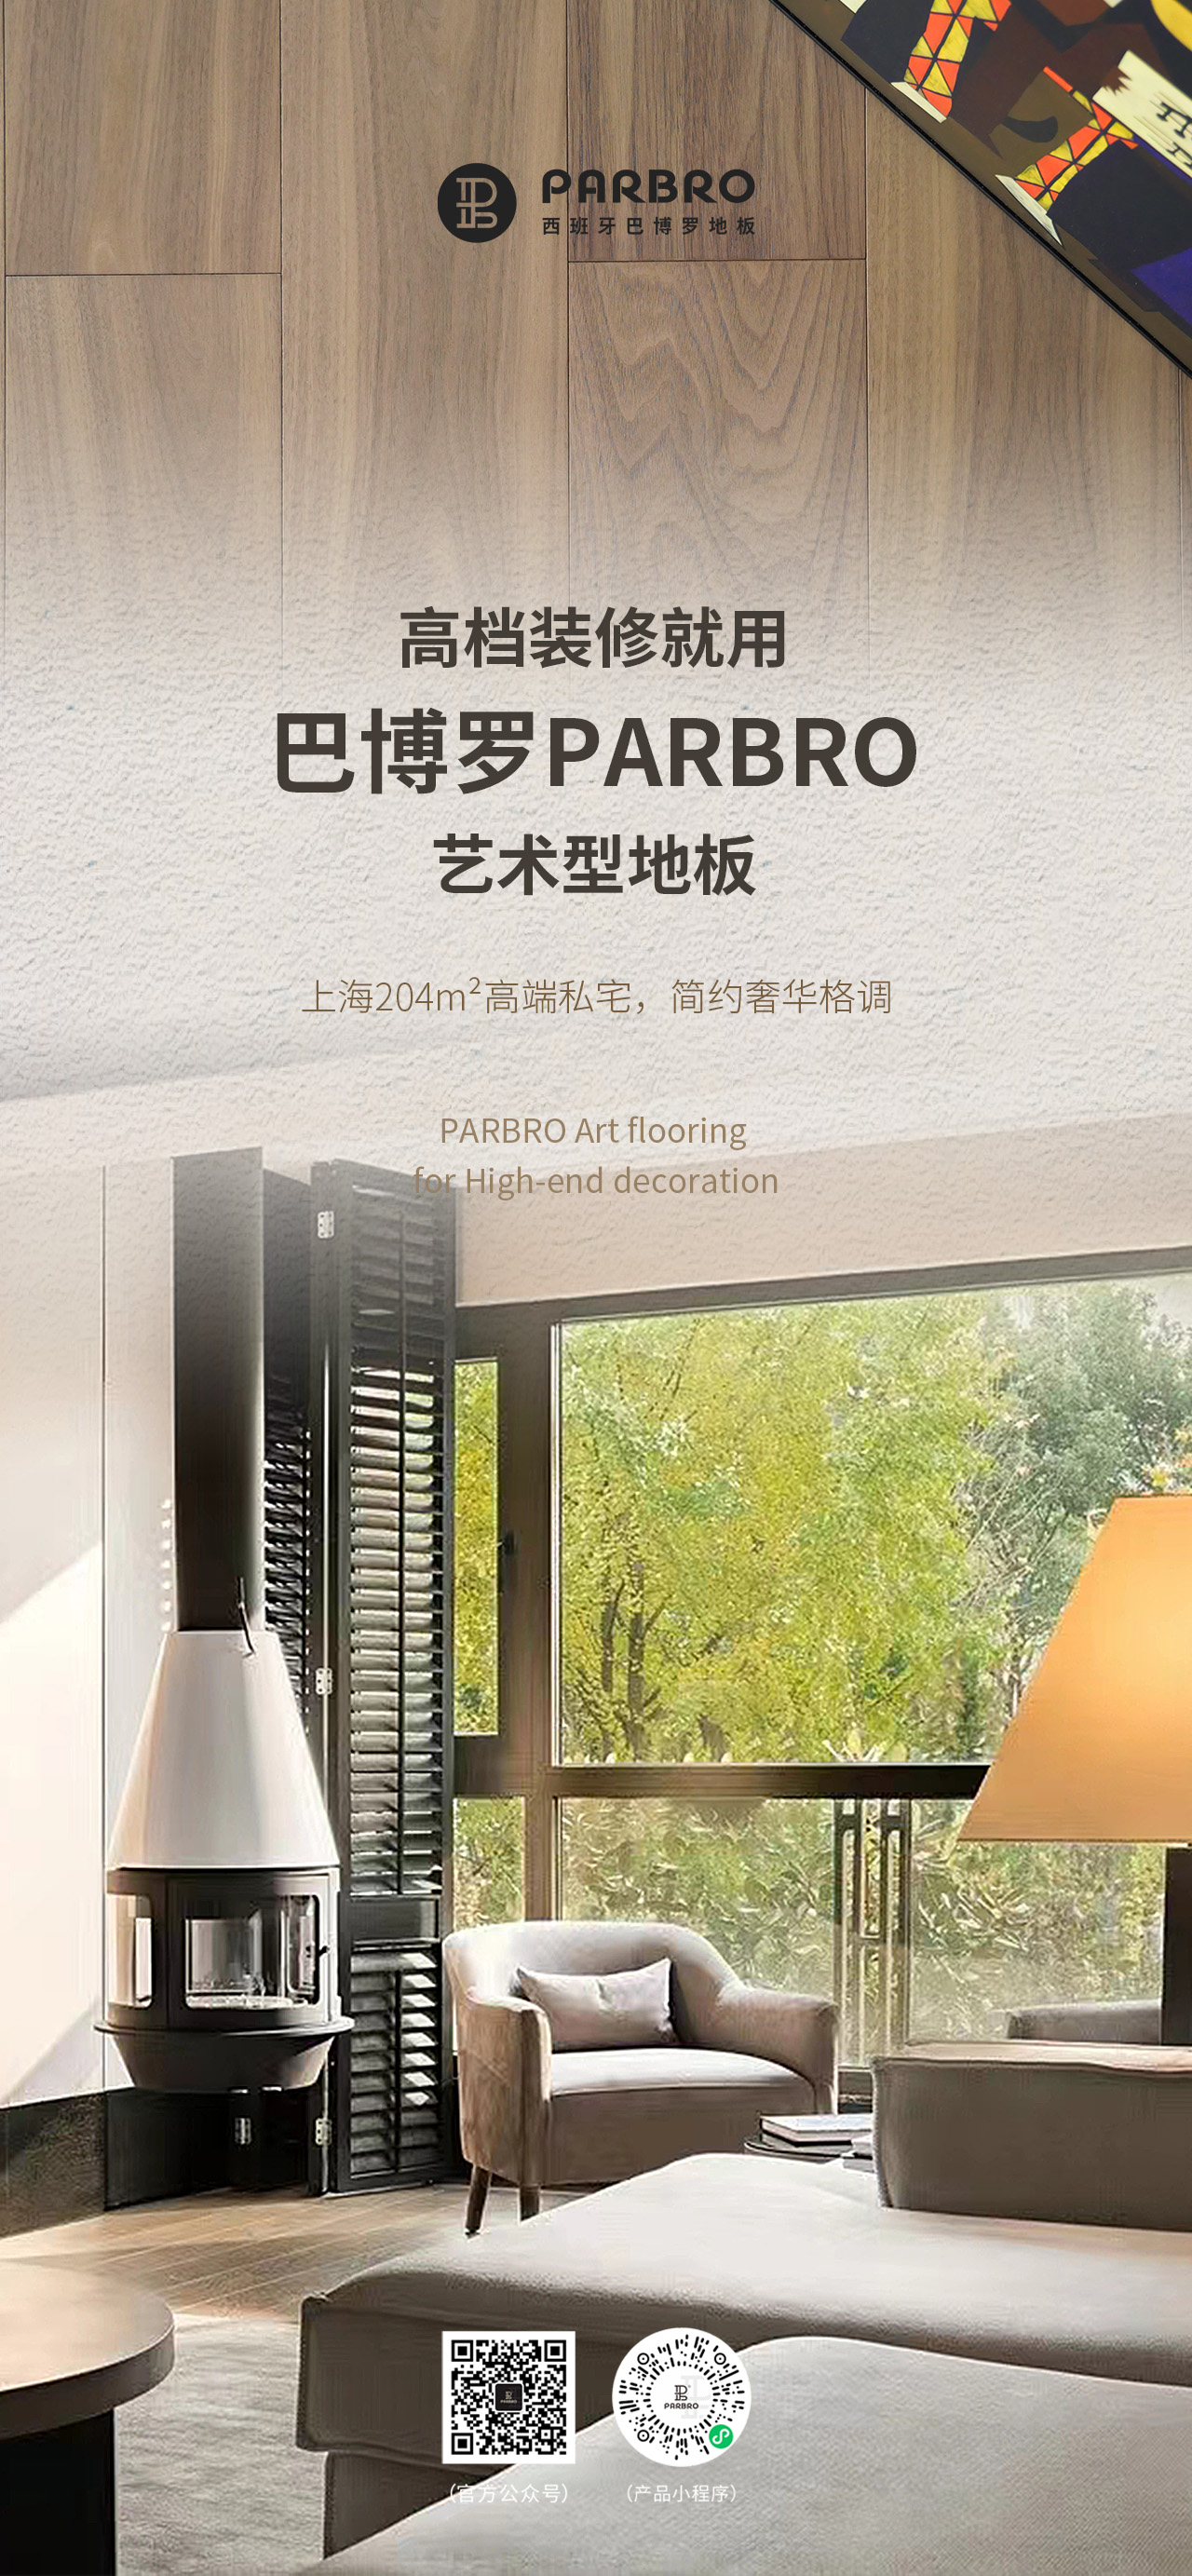 巴博罗PARBRO，作为一家专注于艺术型地板的高端品牌，致力于为全球消费者提供个性化的木地板解决方案。